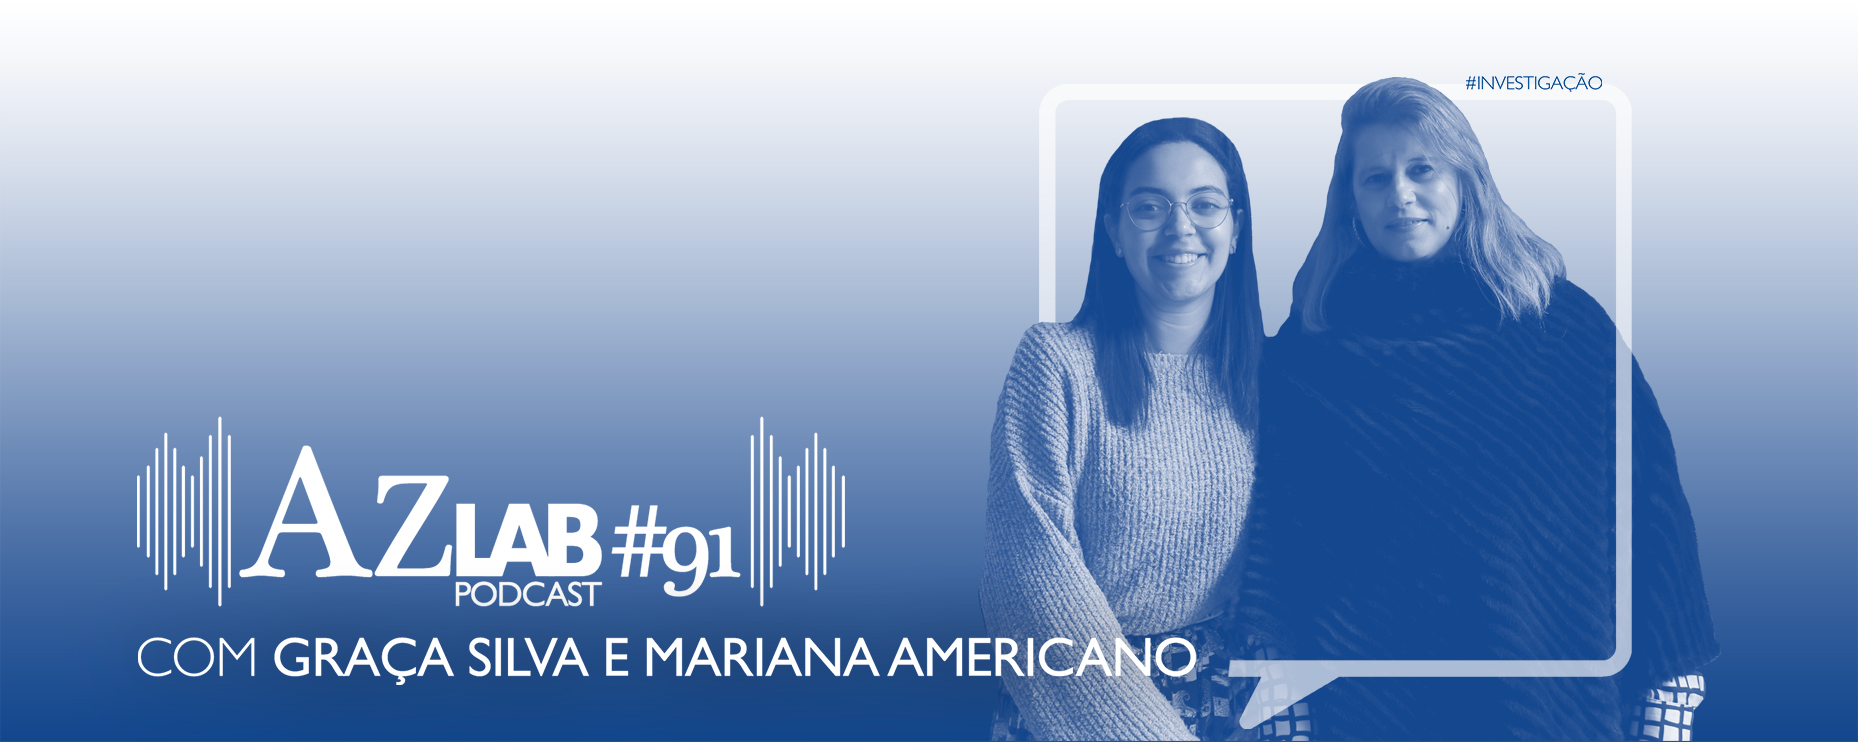 AZLAB#91 [PODCAST] | WITH GRAA SILVA E MARIANA AMERICANO 